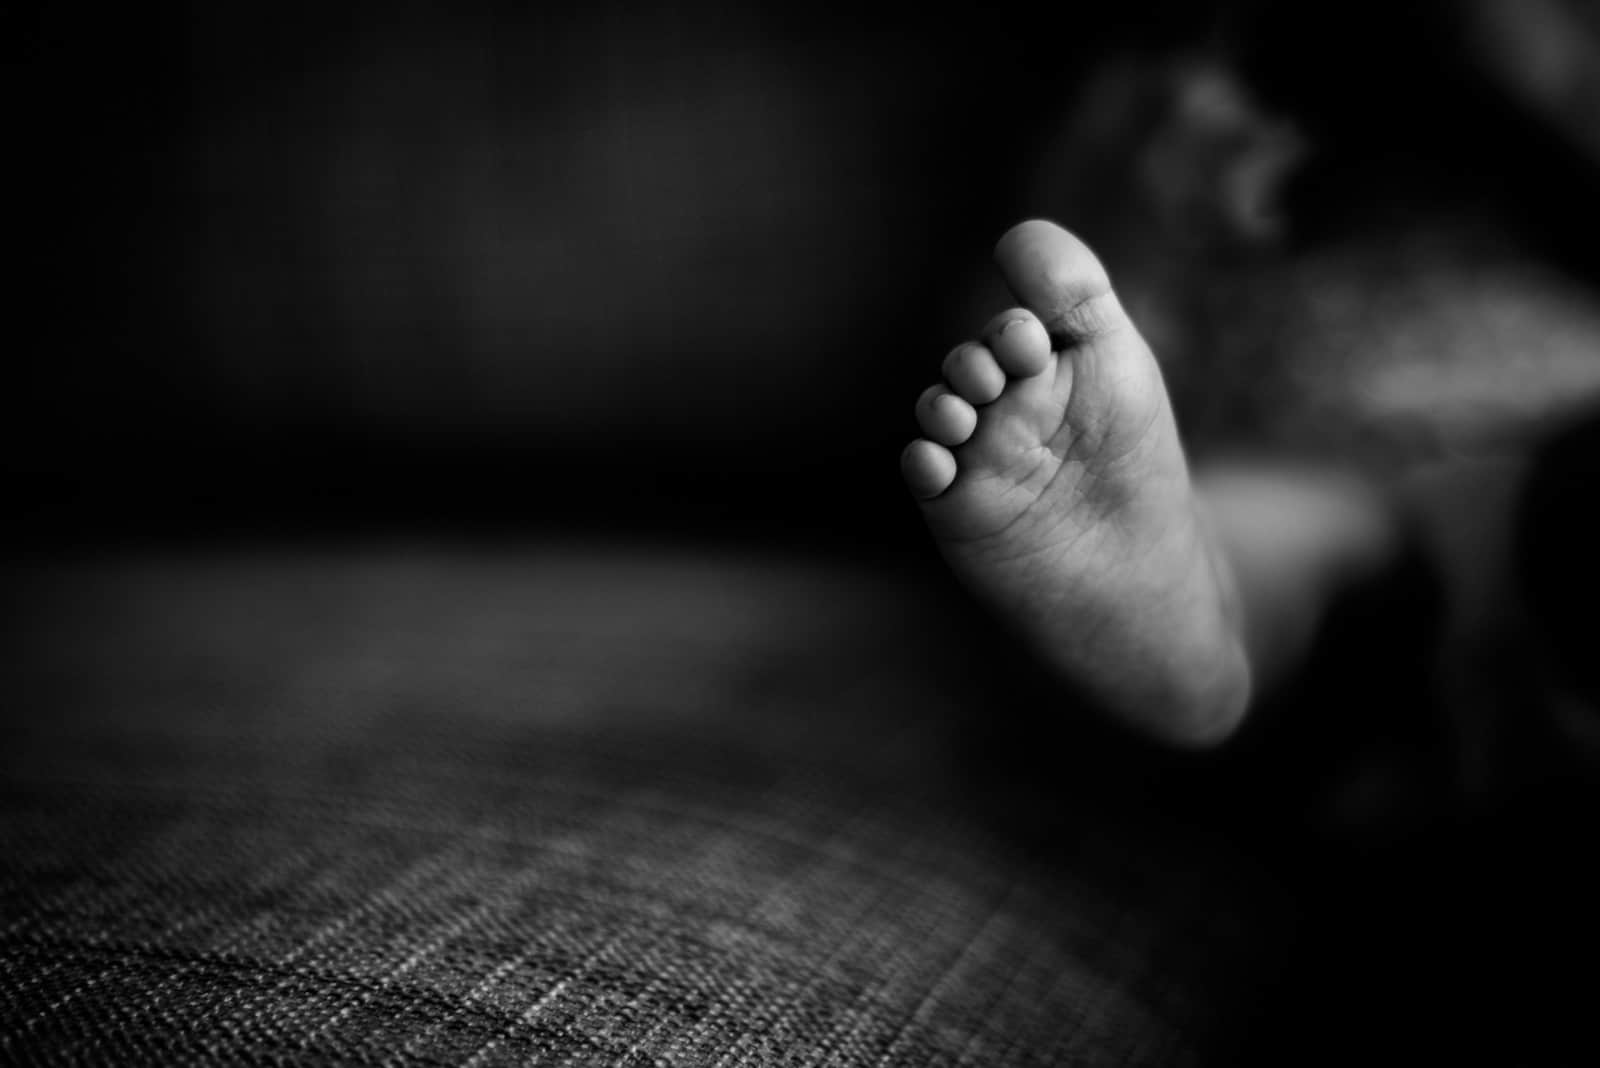 نسيان طفل في ثلاجة الموتى لأكثر من عام وتفاصيل صادمة watanserb.com